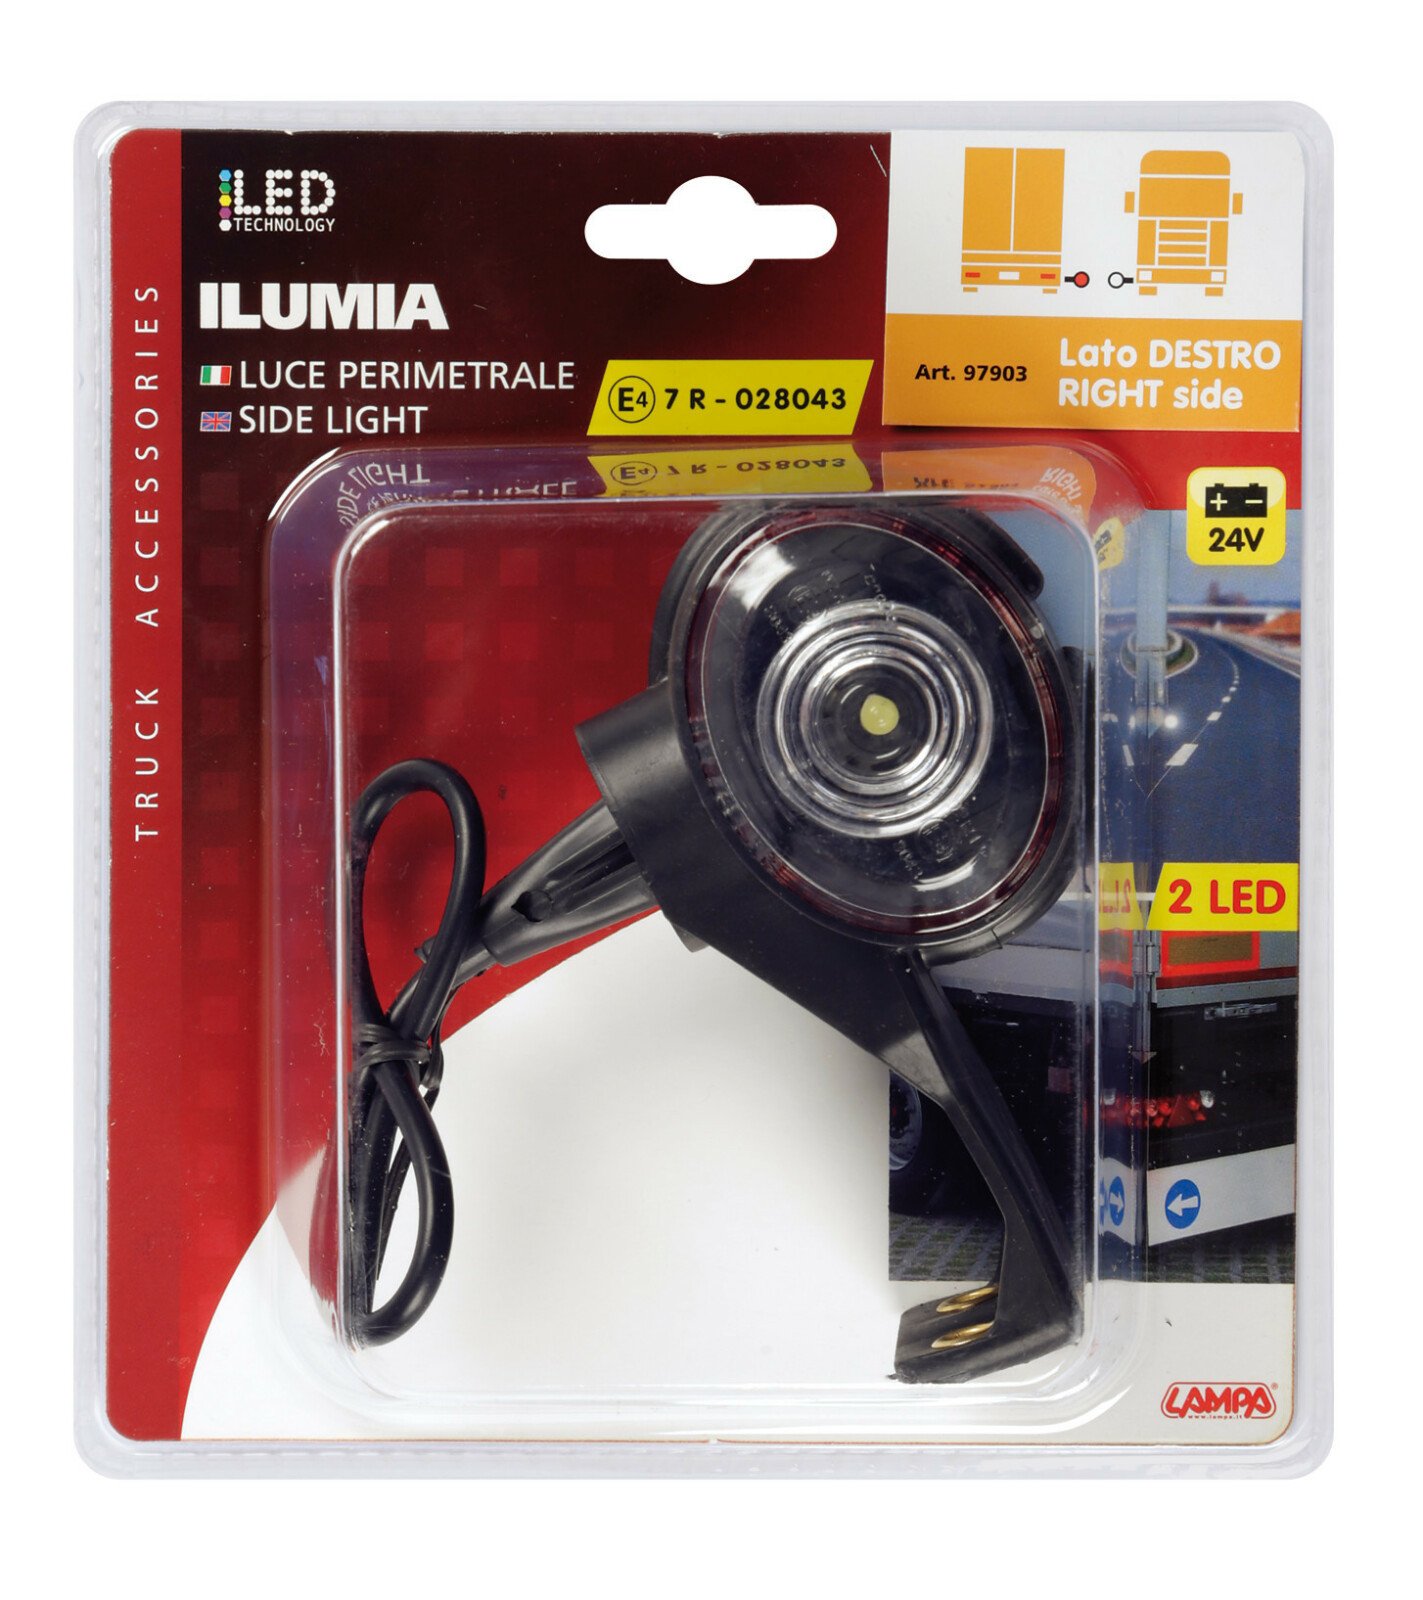 Ilumia, side light, 2 Led, 24V - L fit - Right thumb